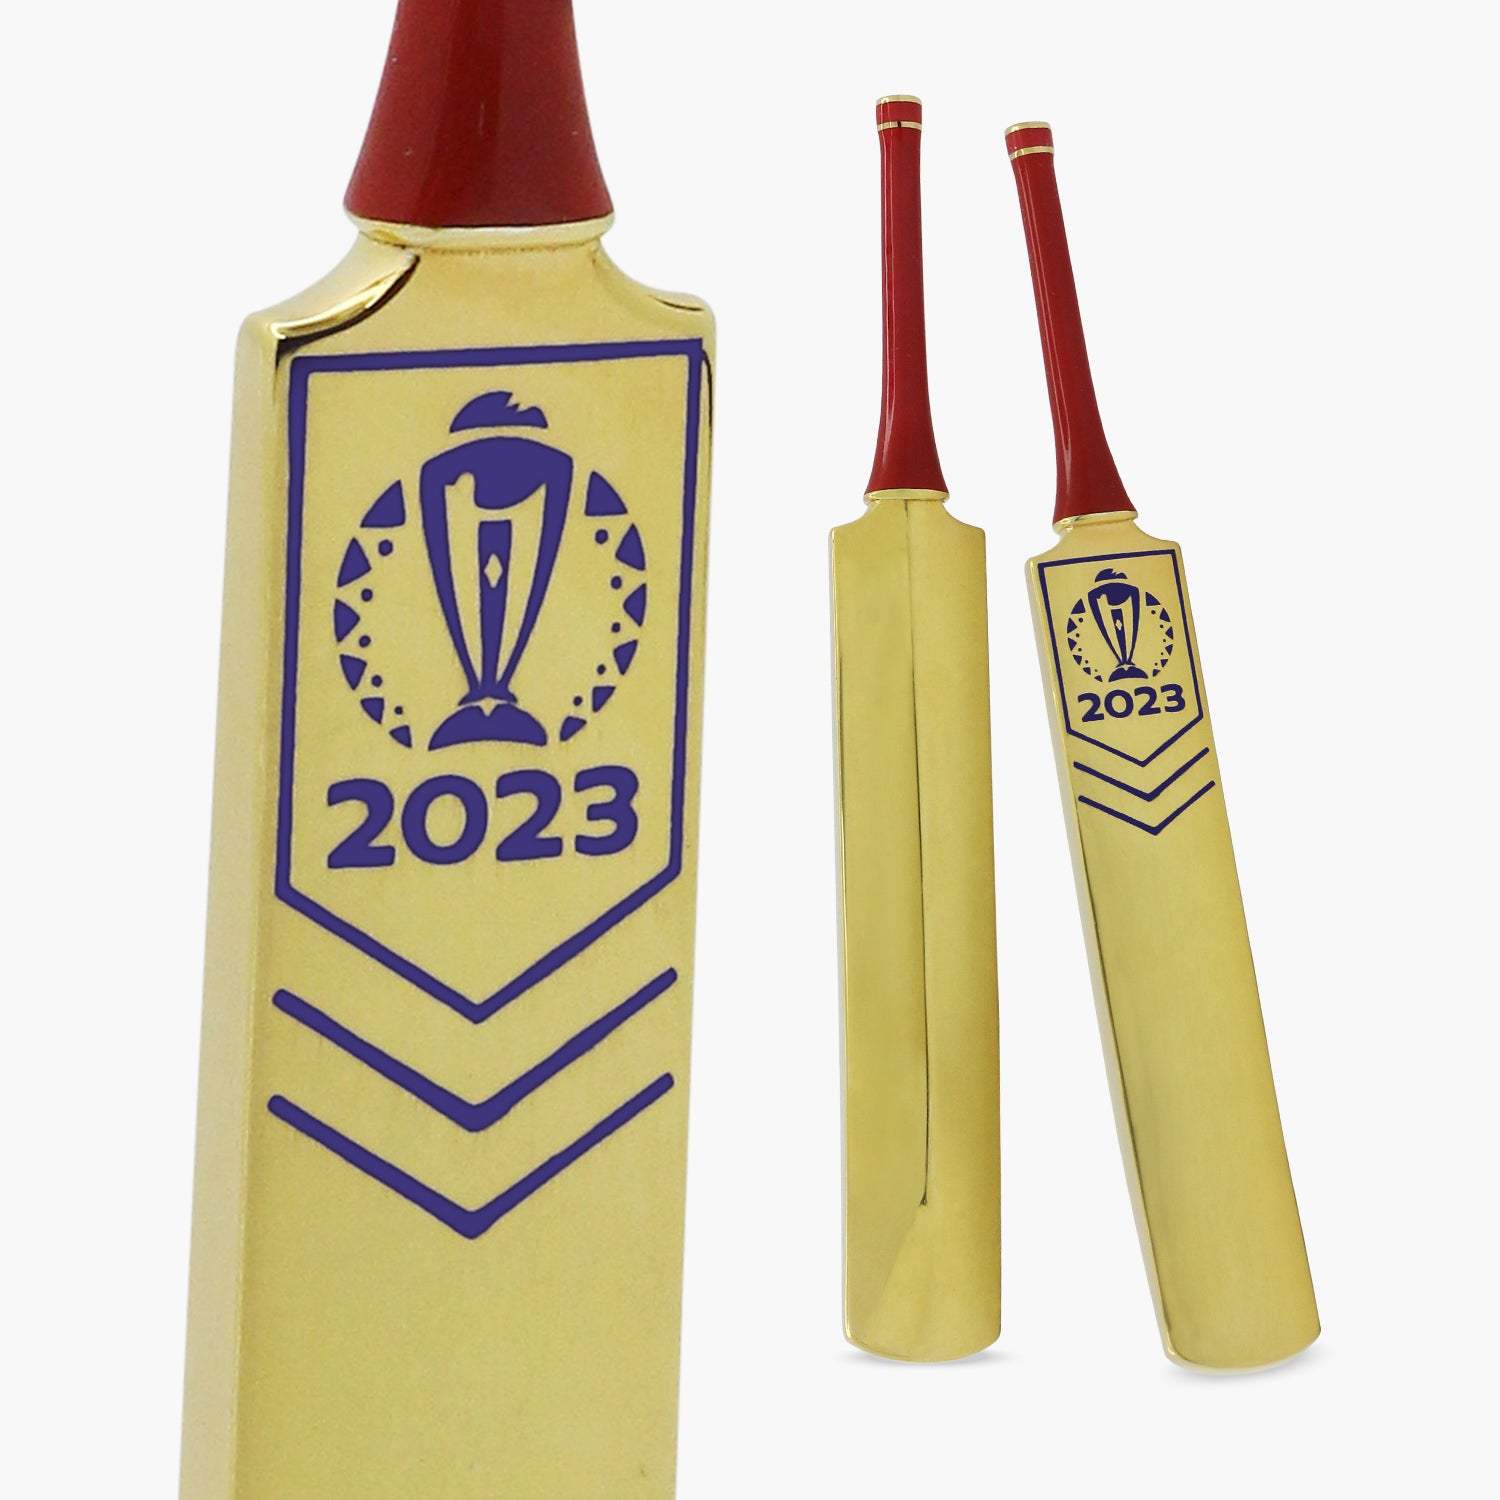 Batte de cricket officielle de la Coupe du monde de cricket ICC 2023 en argent massif